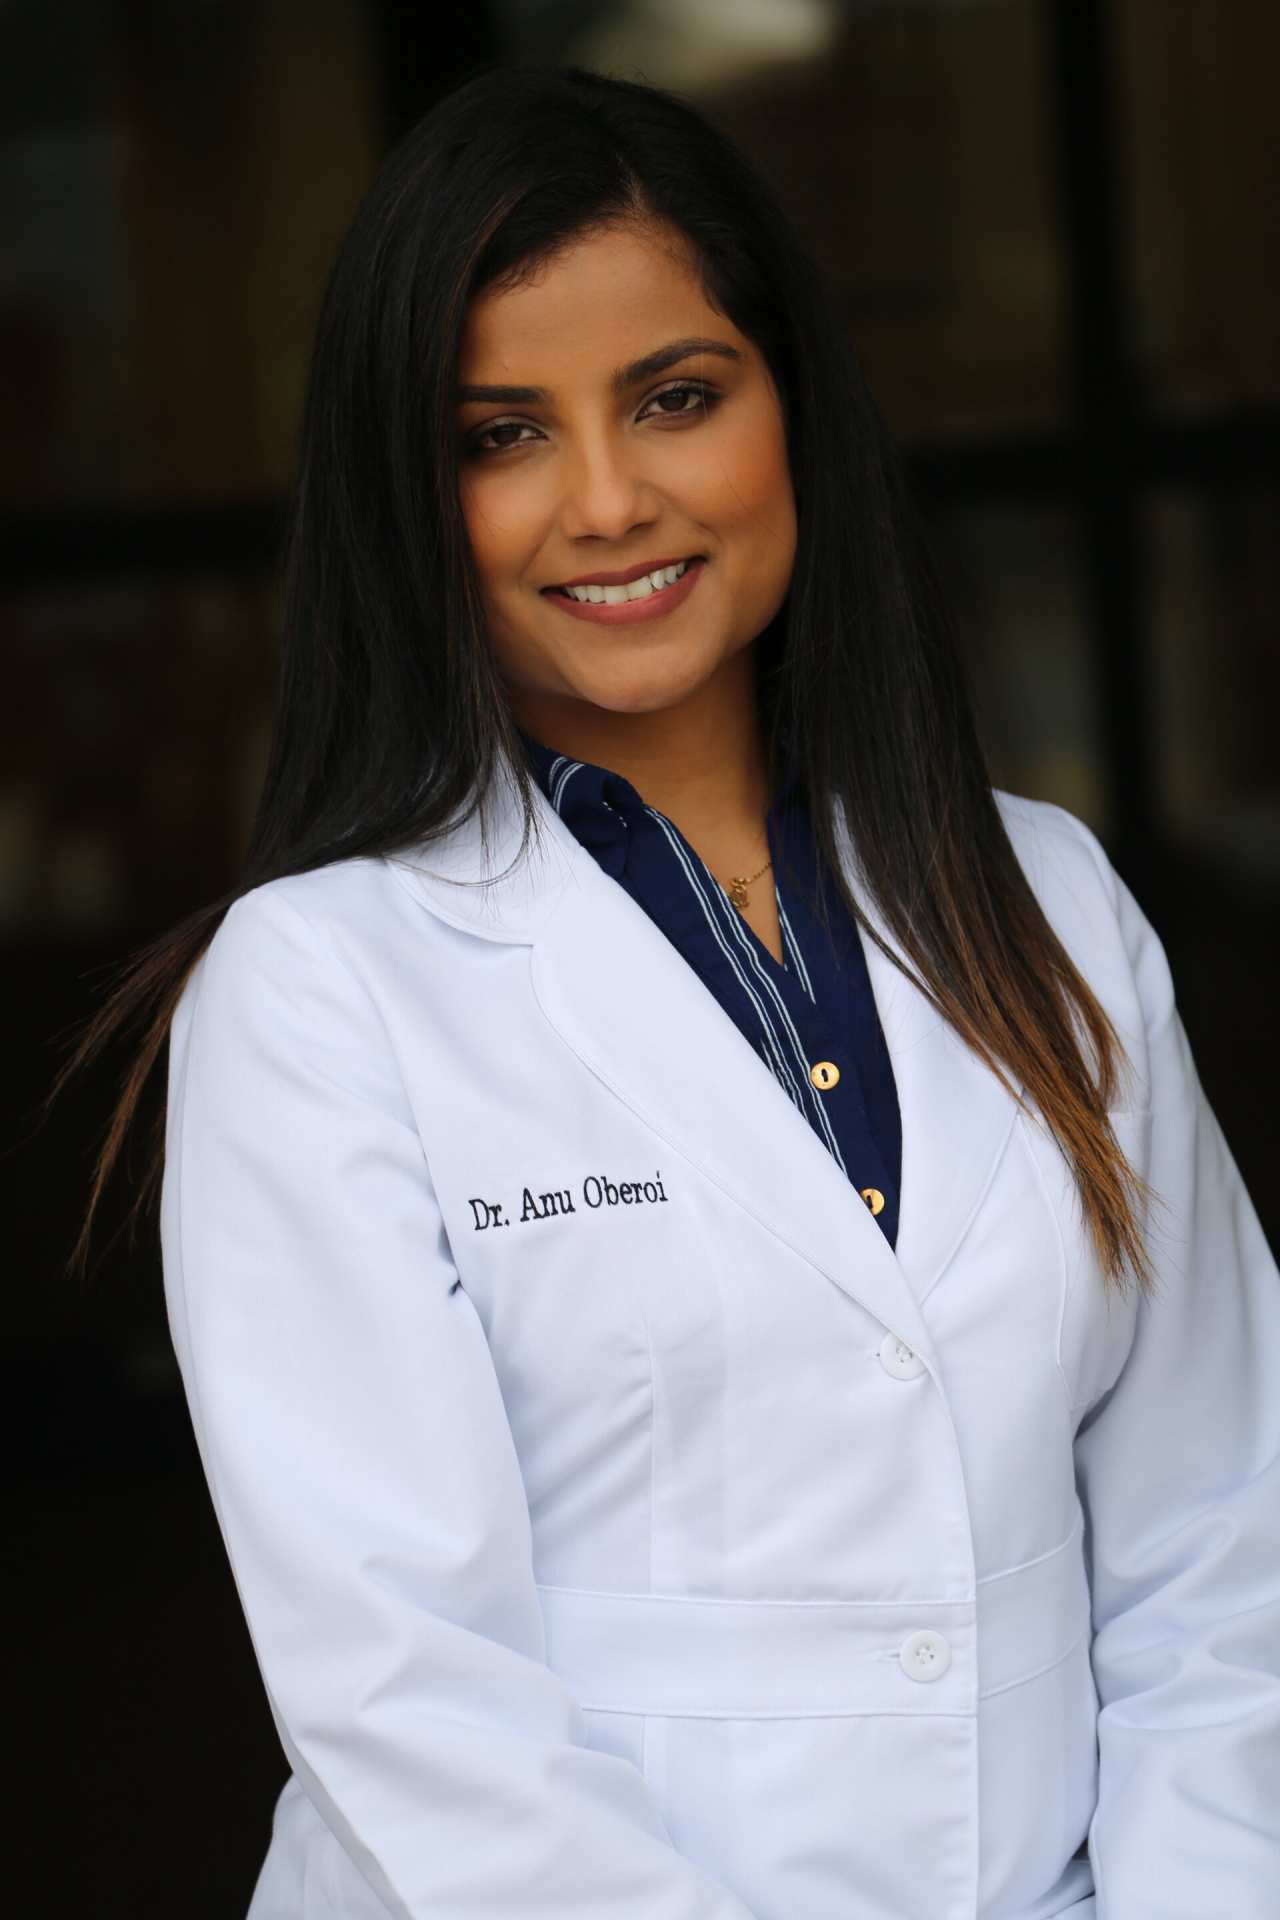 Dr. Anu Oberoi